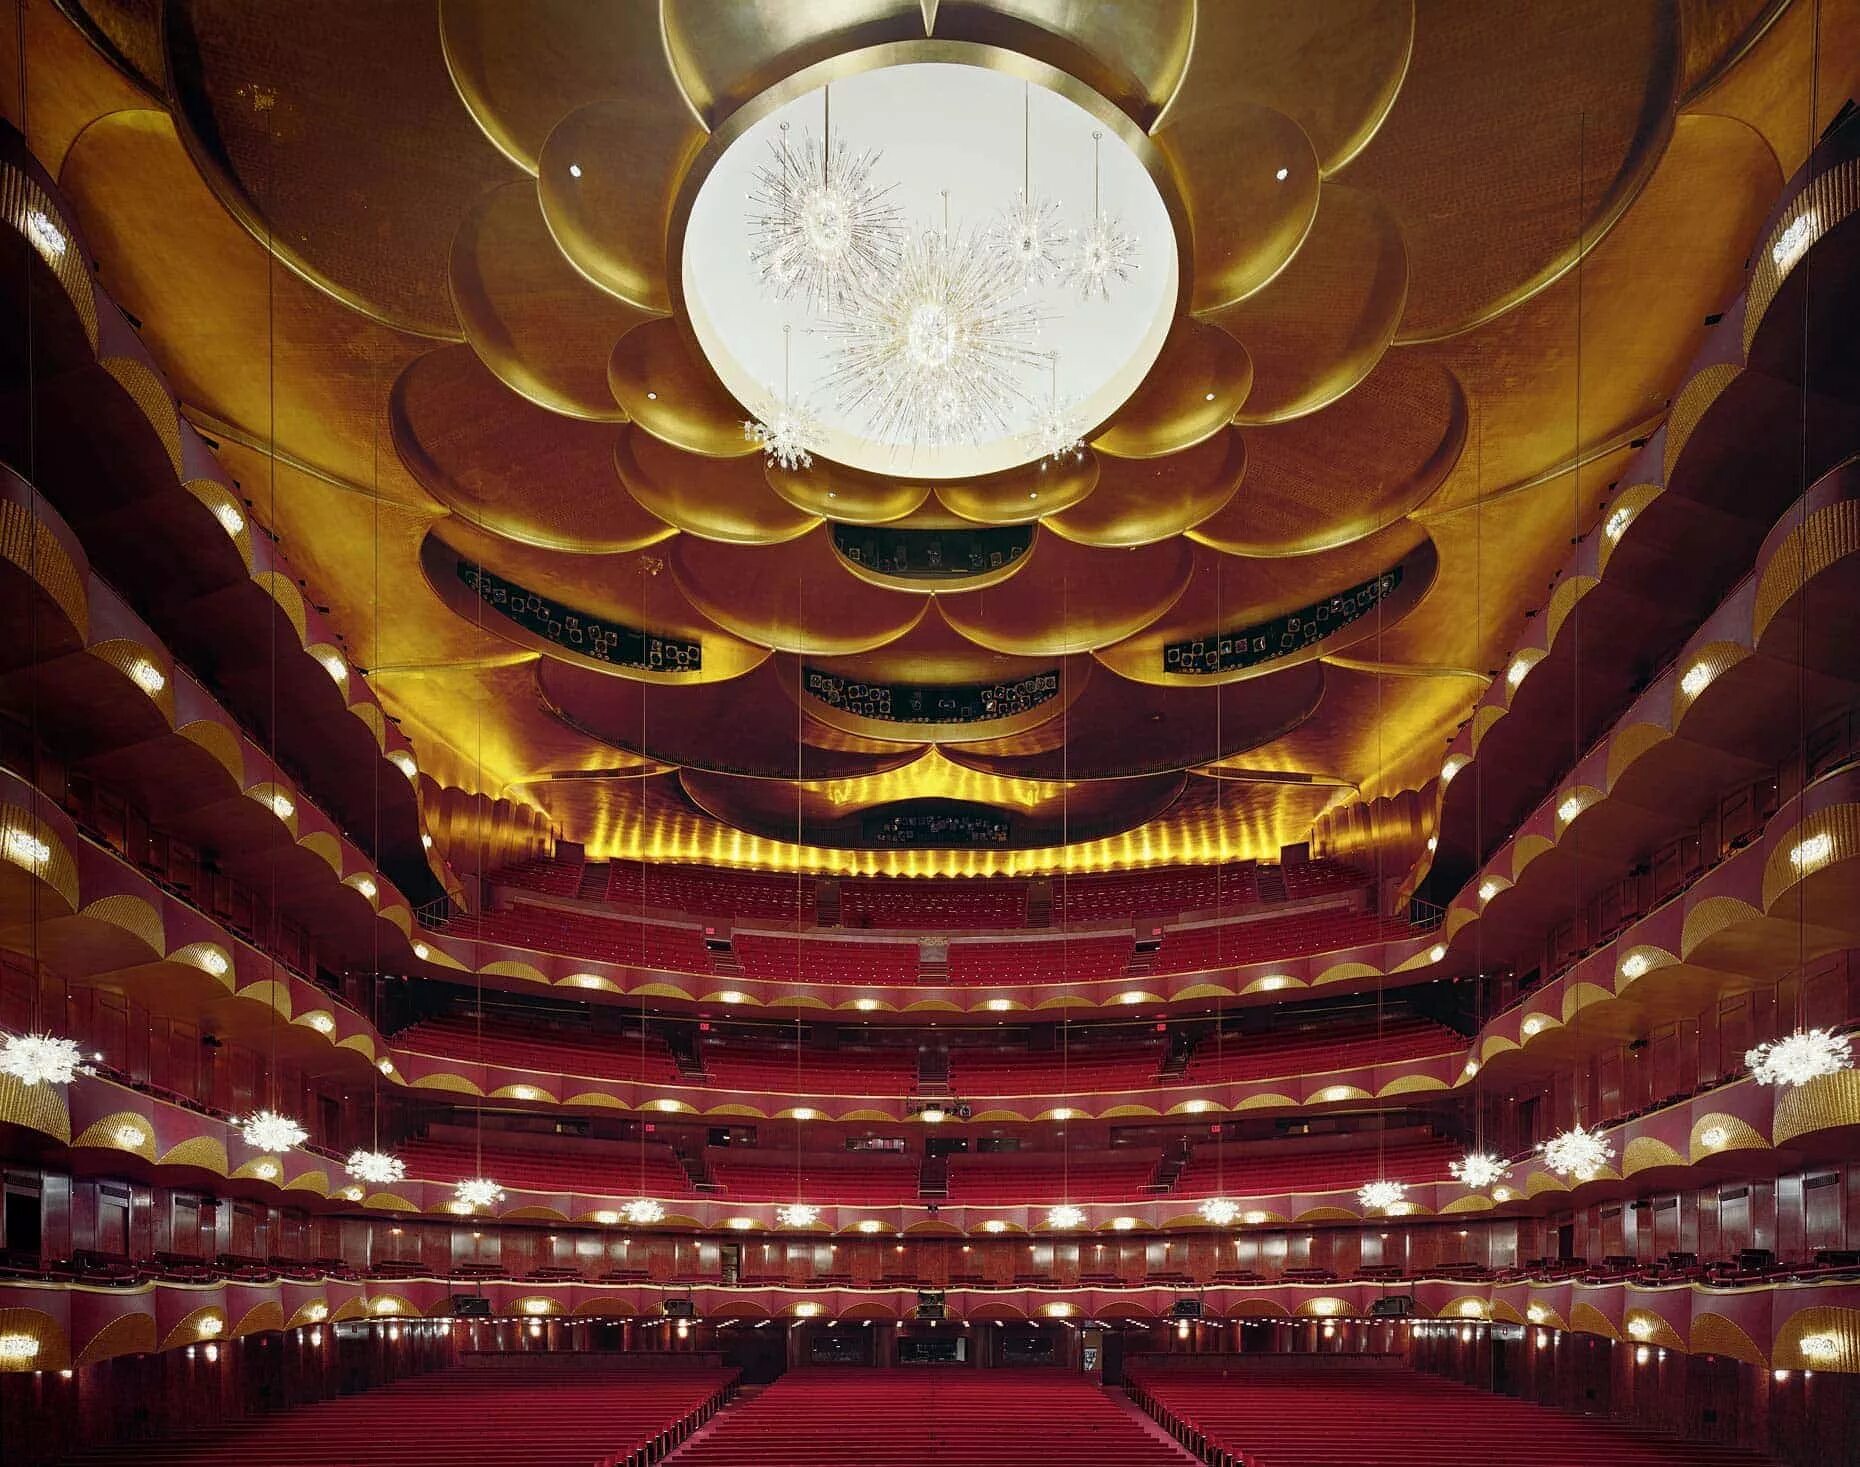 Метрополитен-опера, Нью-Йорк, США. The Metropolitan Opera House Нью-Йорк США. Метрополитен опера в Нью-Йорке зал. Метрополитен опера театр. Всемирно известные театры